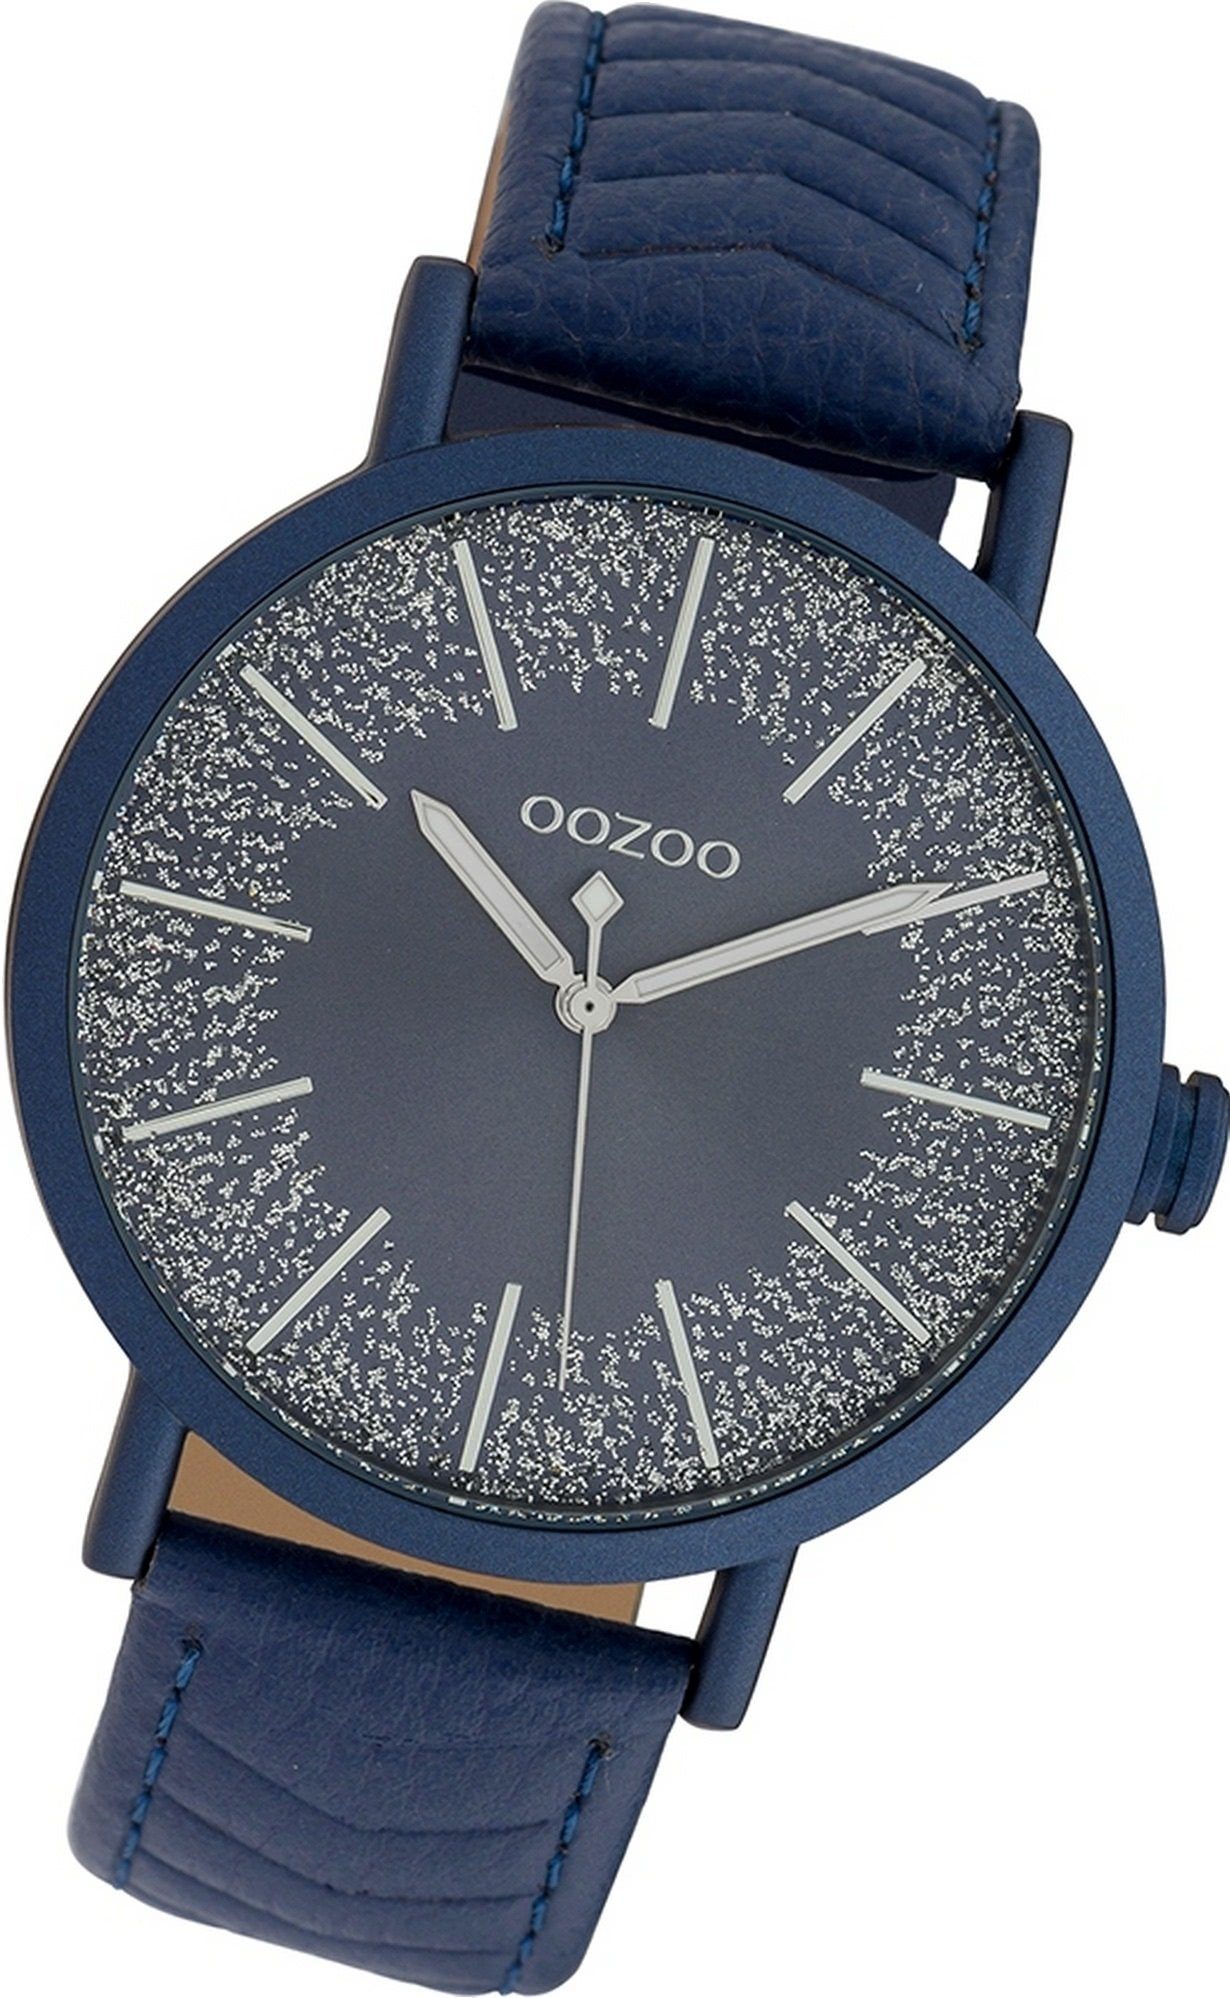 OOZOO Quarzuhr Oozoo Leder Damen Uhr C10147 Analog, Damenuhr Lederarmband dunkelblau, rundes Gehäuse, groß (ca. 42mm) | Quarzuhren